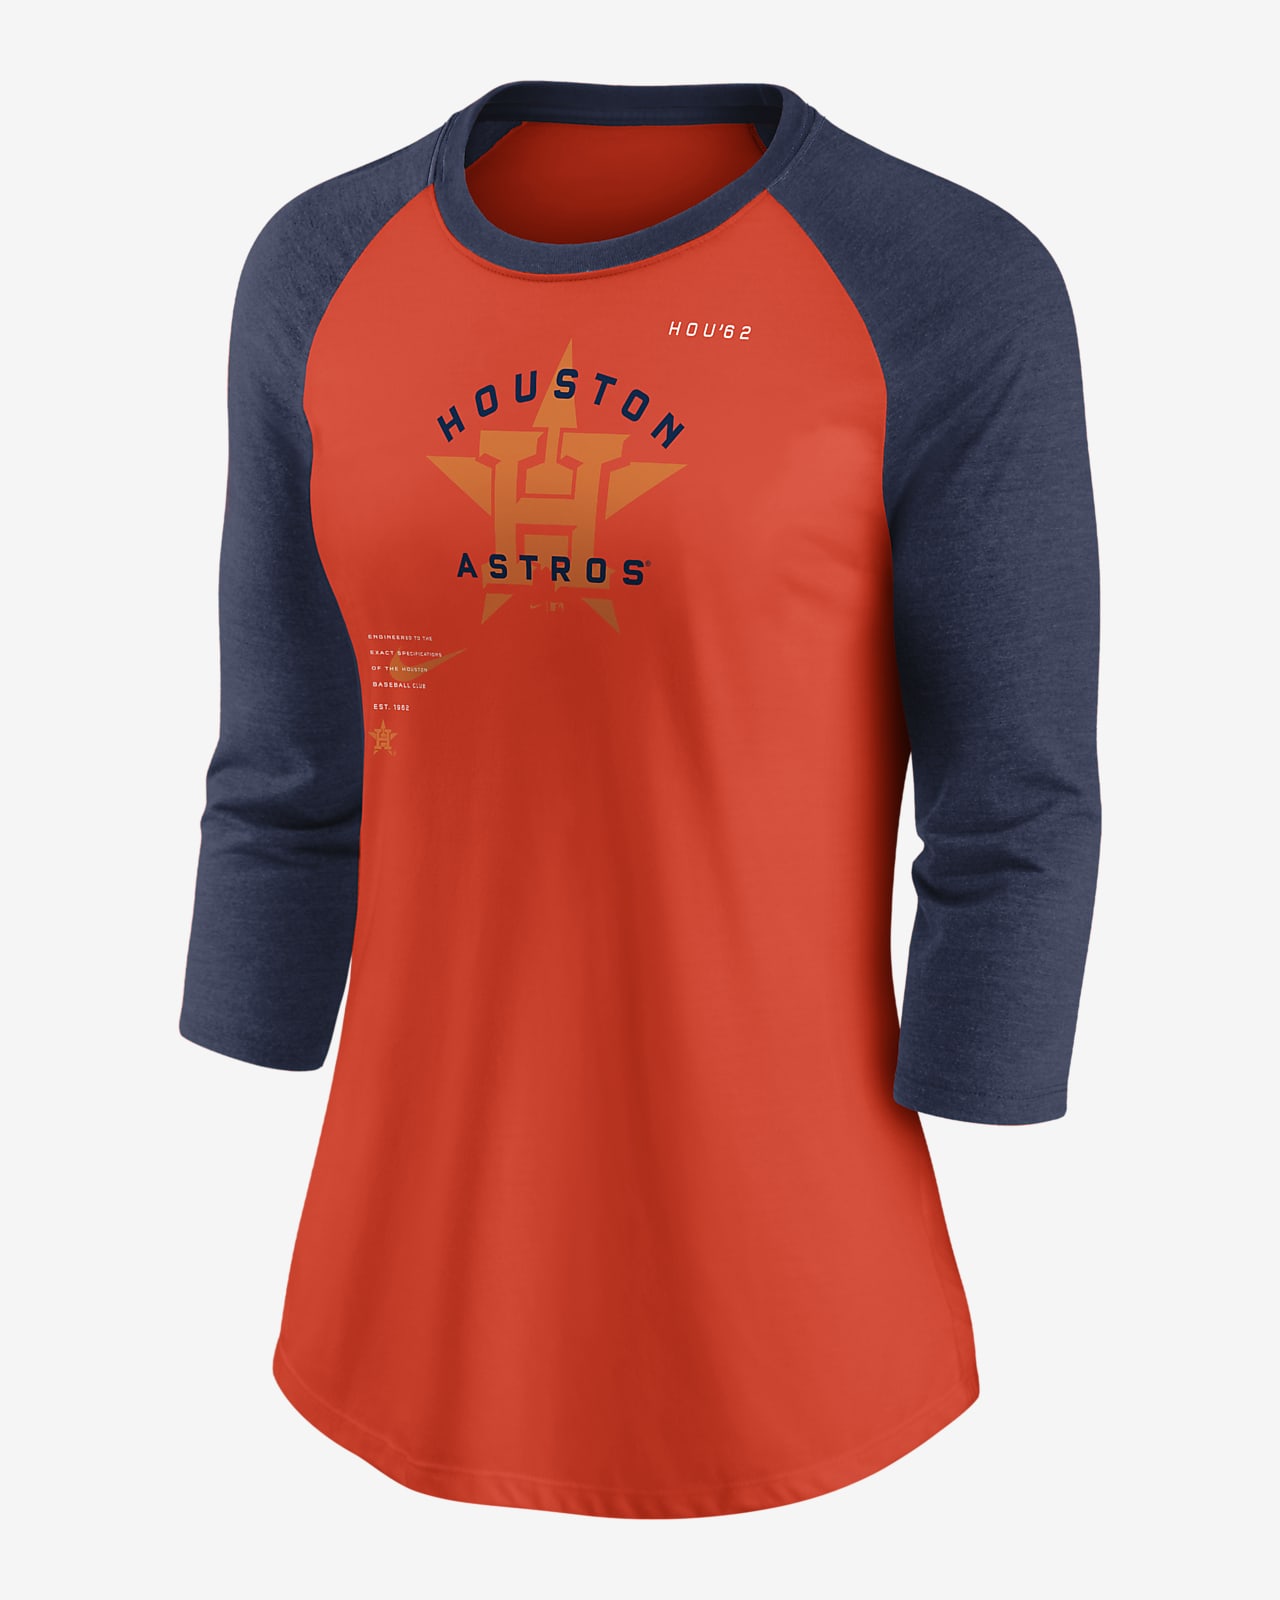 houston astros orange t shirt